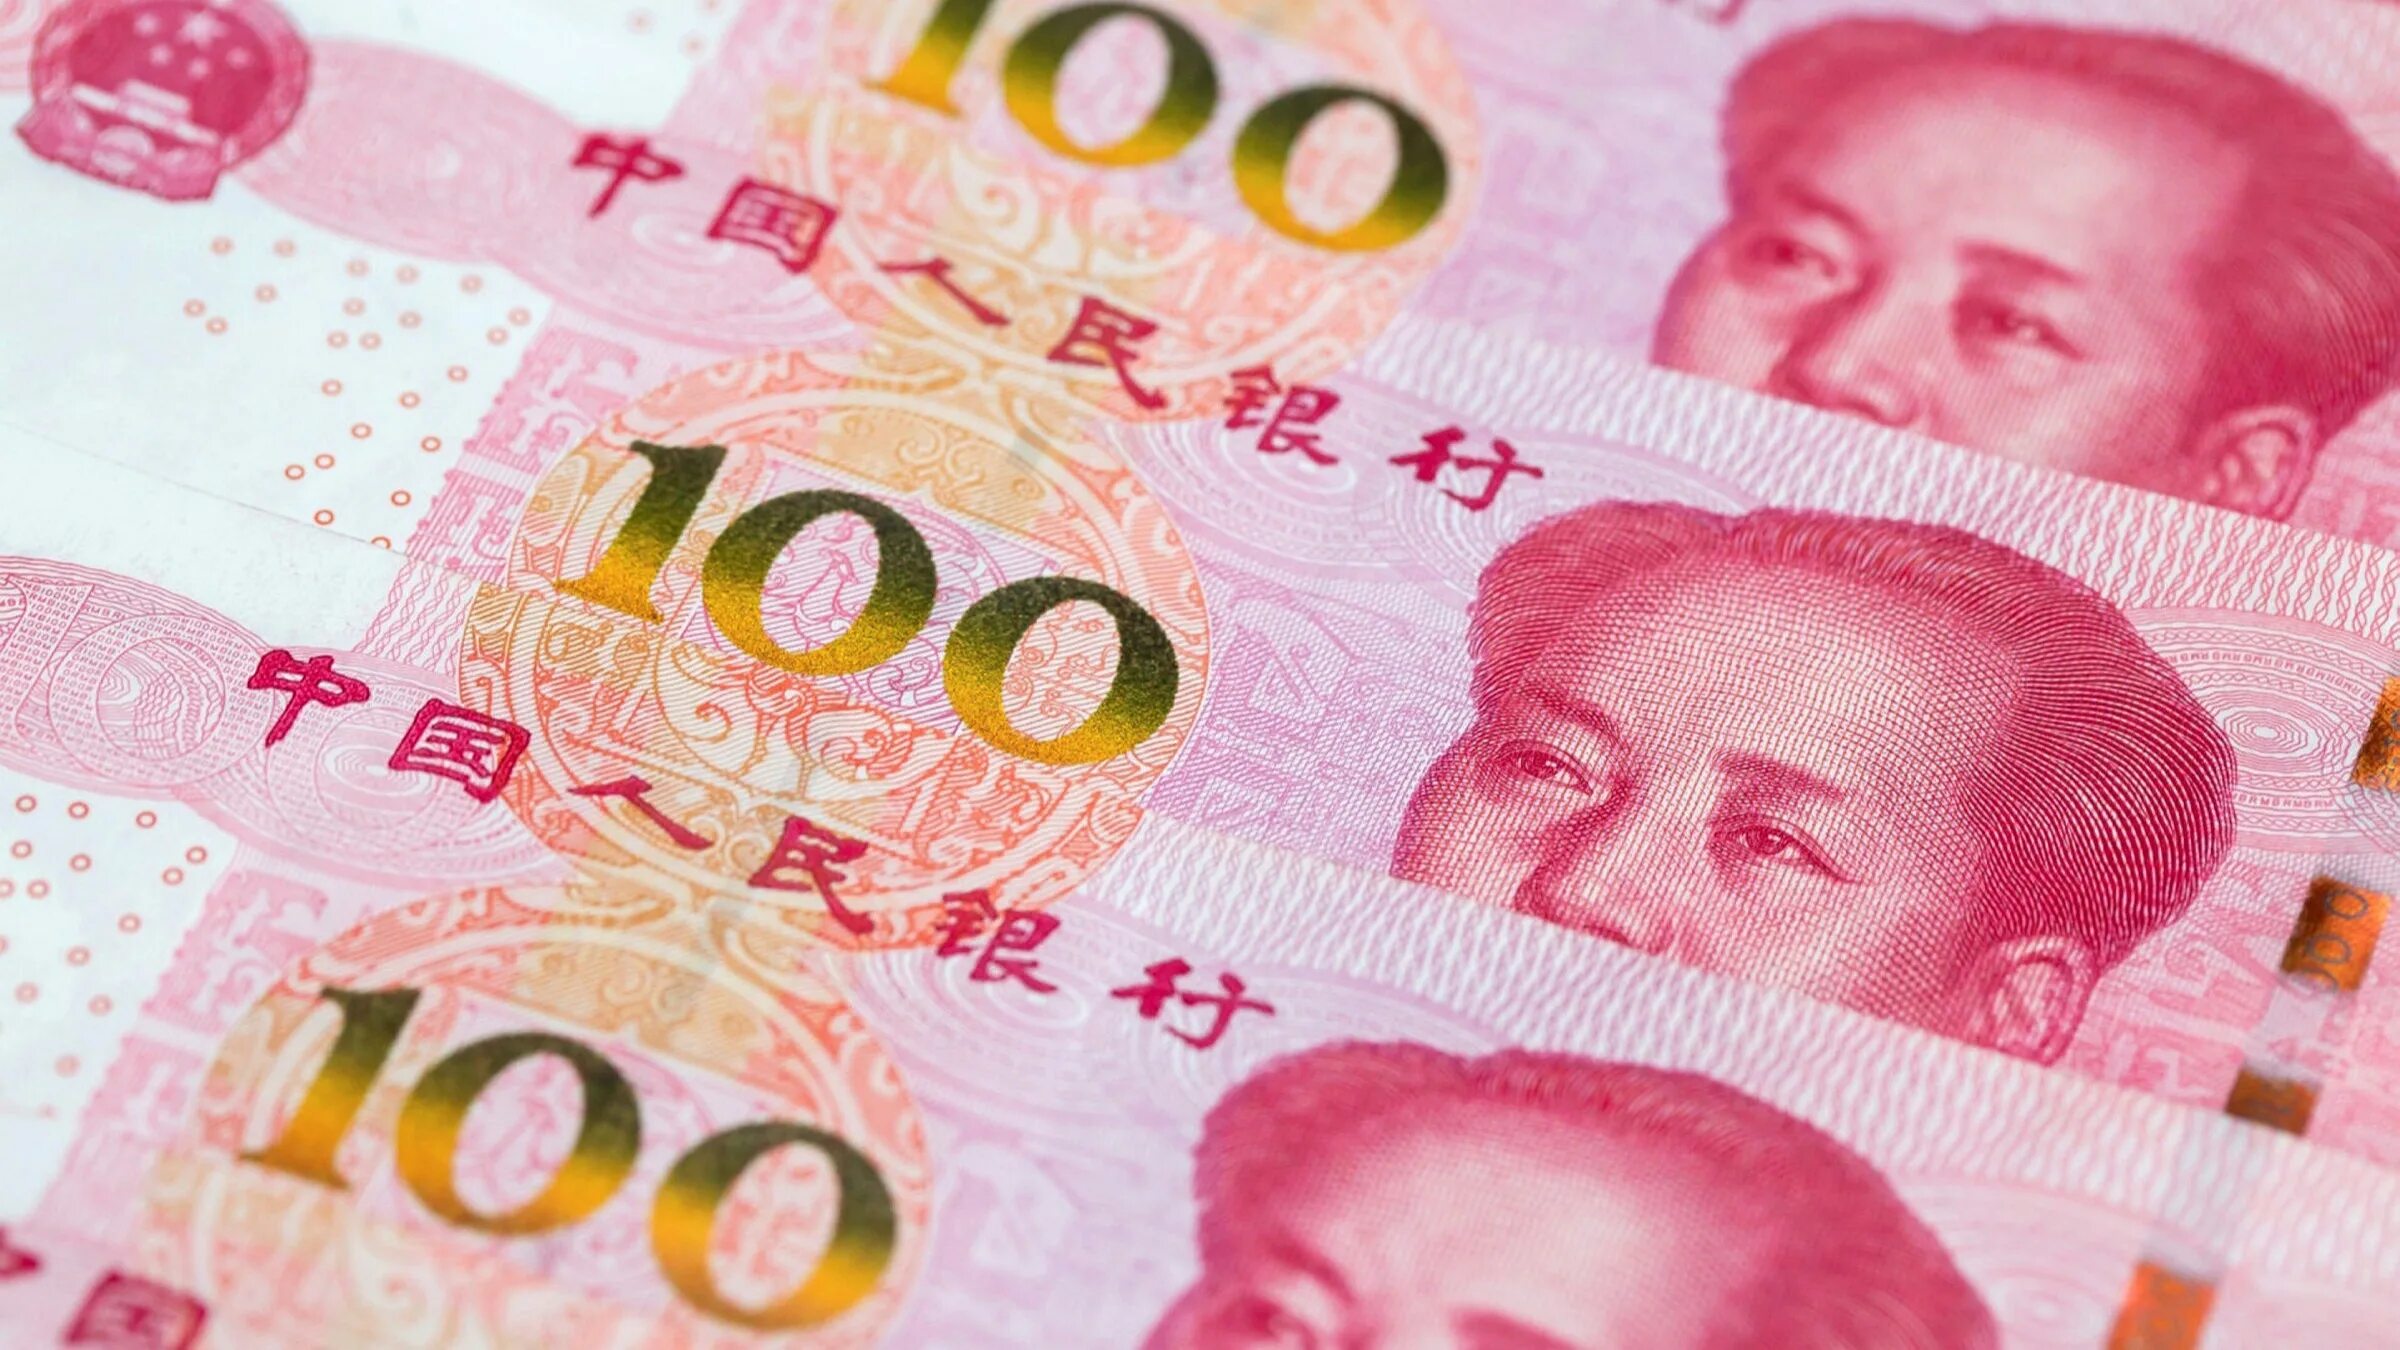 100 Юаней. Китайская валюта. Китайский юань. Валюта Китая.